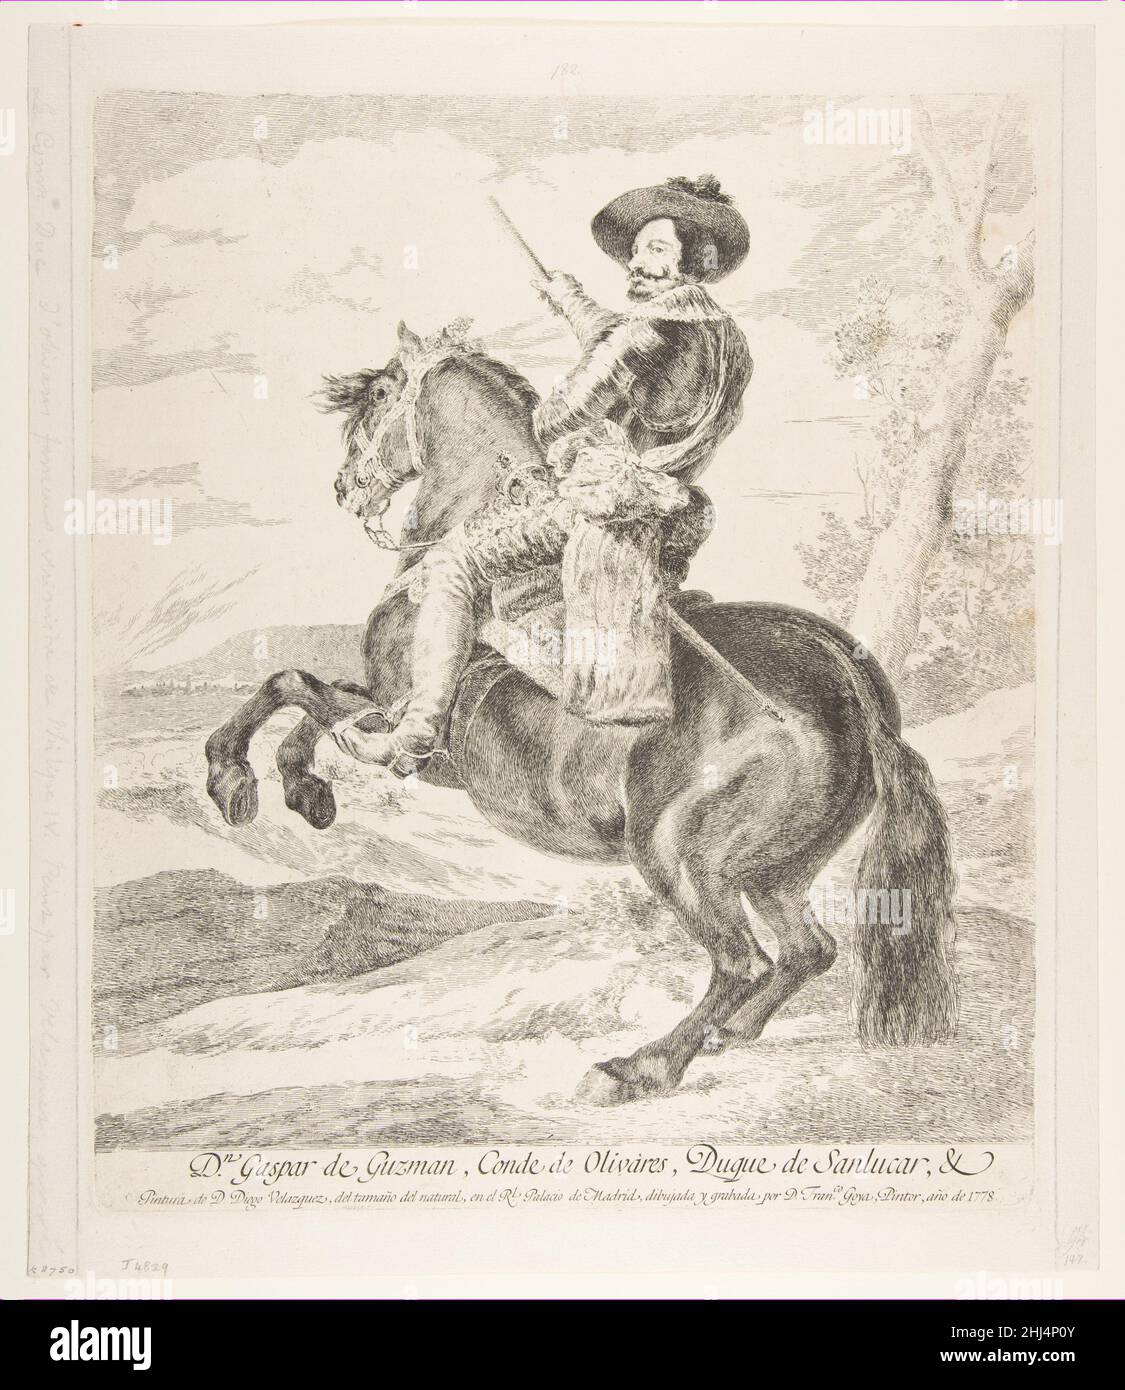 Gaspar de Guzmán, comte duc d'Olivares à cheval, après Velázquez 1778 Goya (Francisco de Goya y Lucientes) Espagnol c'est l'un des nombreux gravures Goya faites d'après des peintures de l'éminent artiste espagnol Diego Velázquez qui étaient dans la collection royale de Madrid.La peinture de Velázquez du Comte-Duc d’Olivares, Premier ministre du roi Philippe IV, date d’environ 1636.Il montre le comte à cheval sur un étalon d'élevage, levant un bâton et regardant directement le spectateur avant de commander une bataille.Dans sa gravure, Goya a diminué la bataille; les chevaux et les soldats sont de moins en moins difficiles à faire ou Banque D'Images